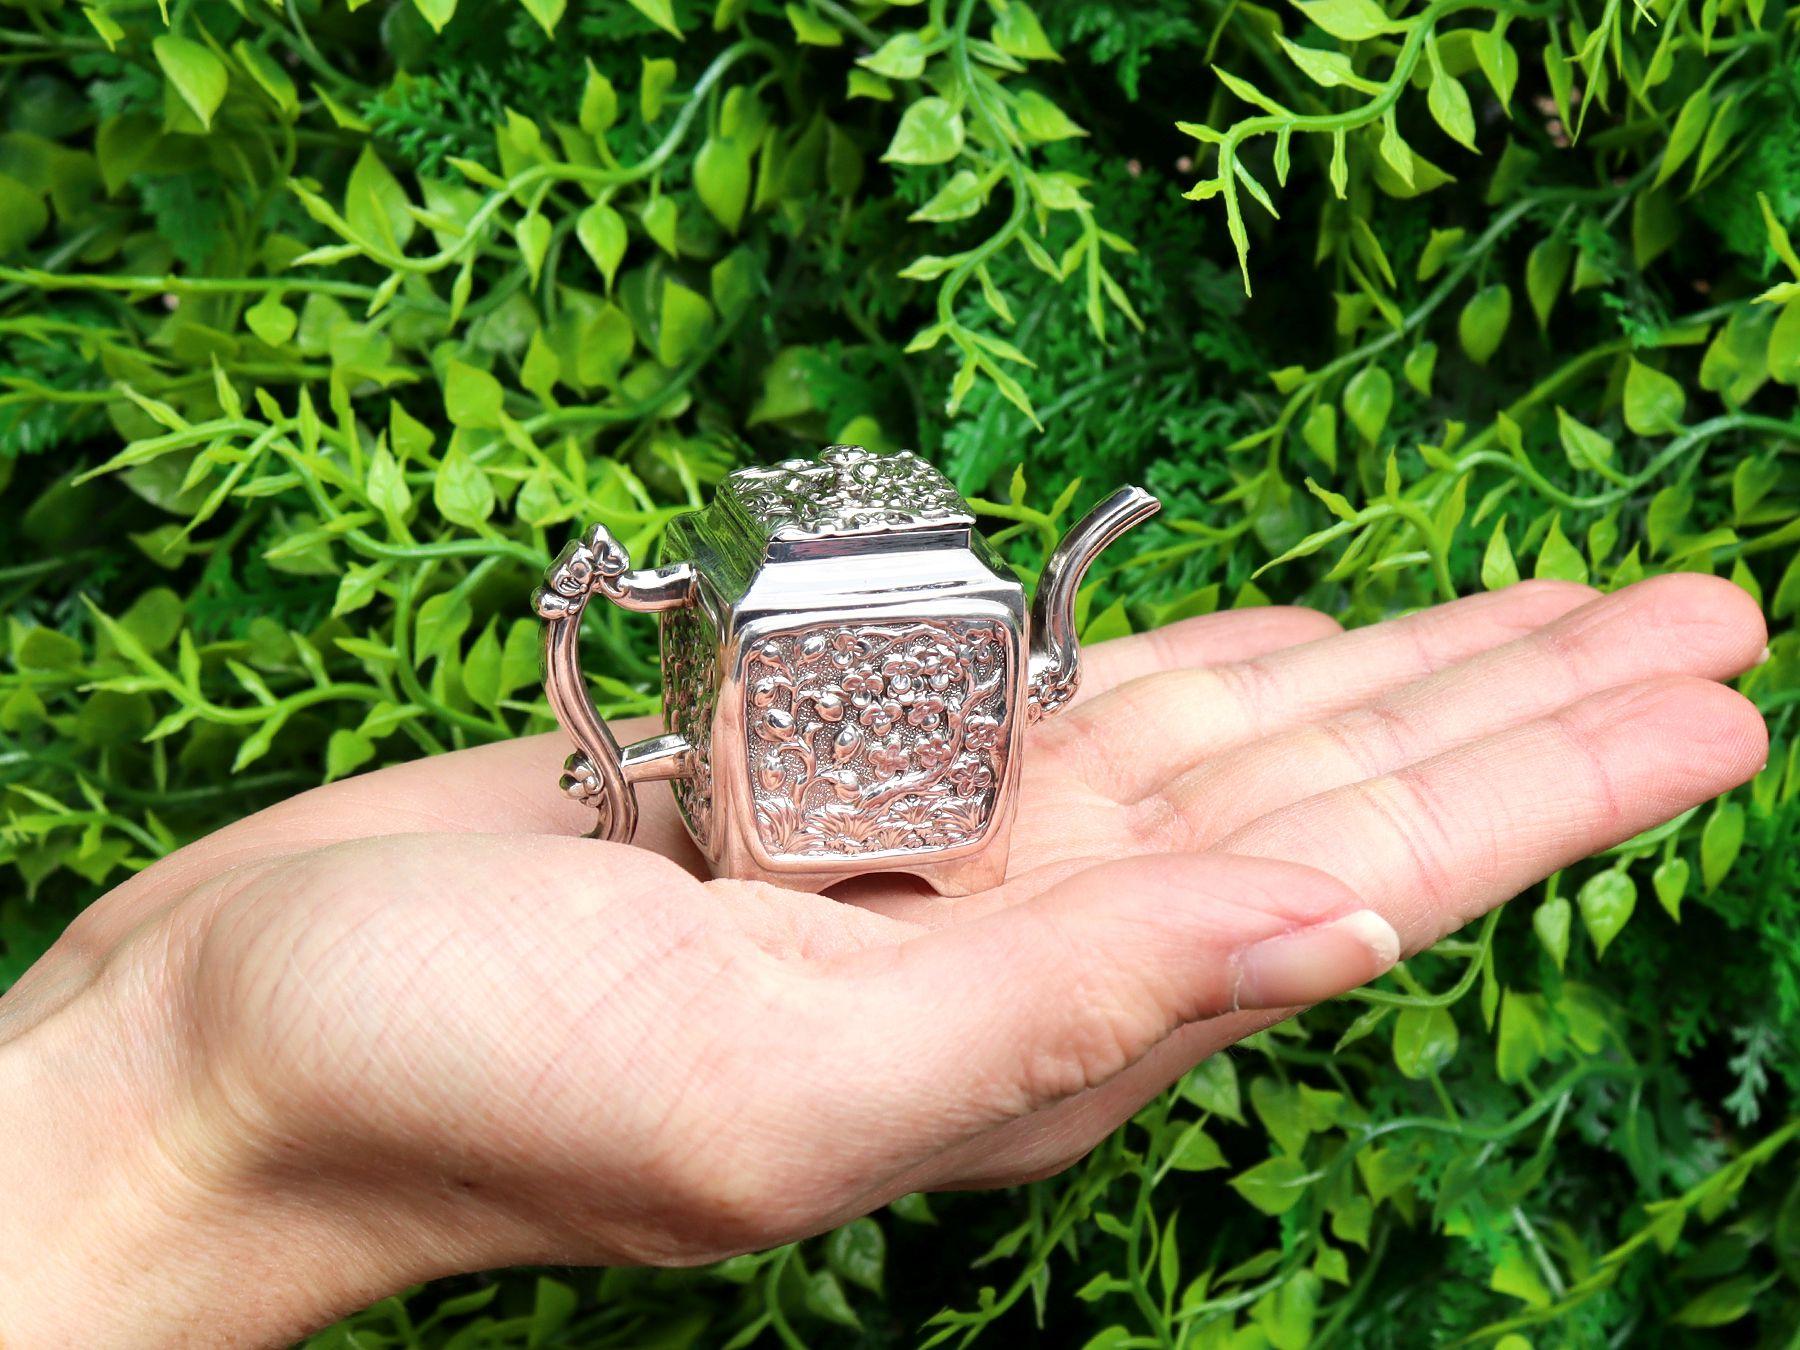 Eine außergewöhnliche, feine und beeindruckende Miniatur-Teekanne aus viktorianischem englischem Sterlingsilber im Chinoiserie-Stil; eine Ergänzung zu unserer Silber-Teegeschirr-Sammlung

Diese außergewöhnliche und seltene antike viktorianische